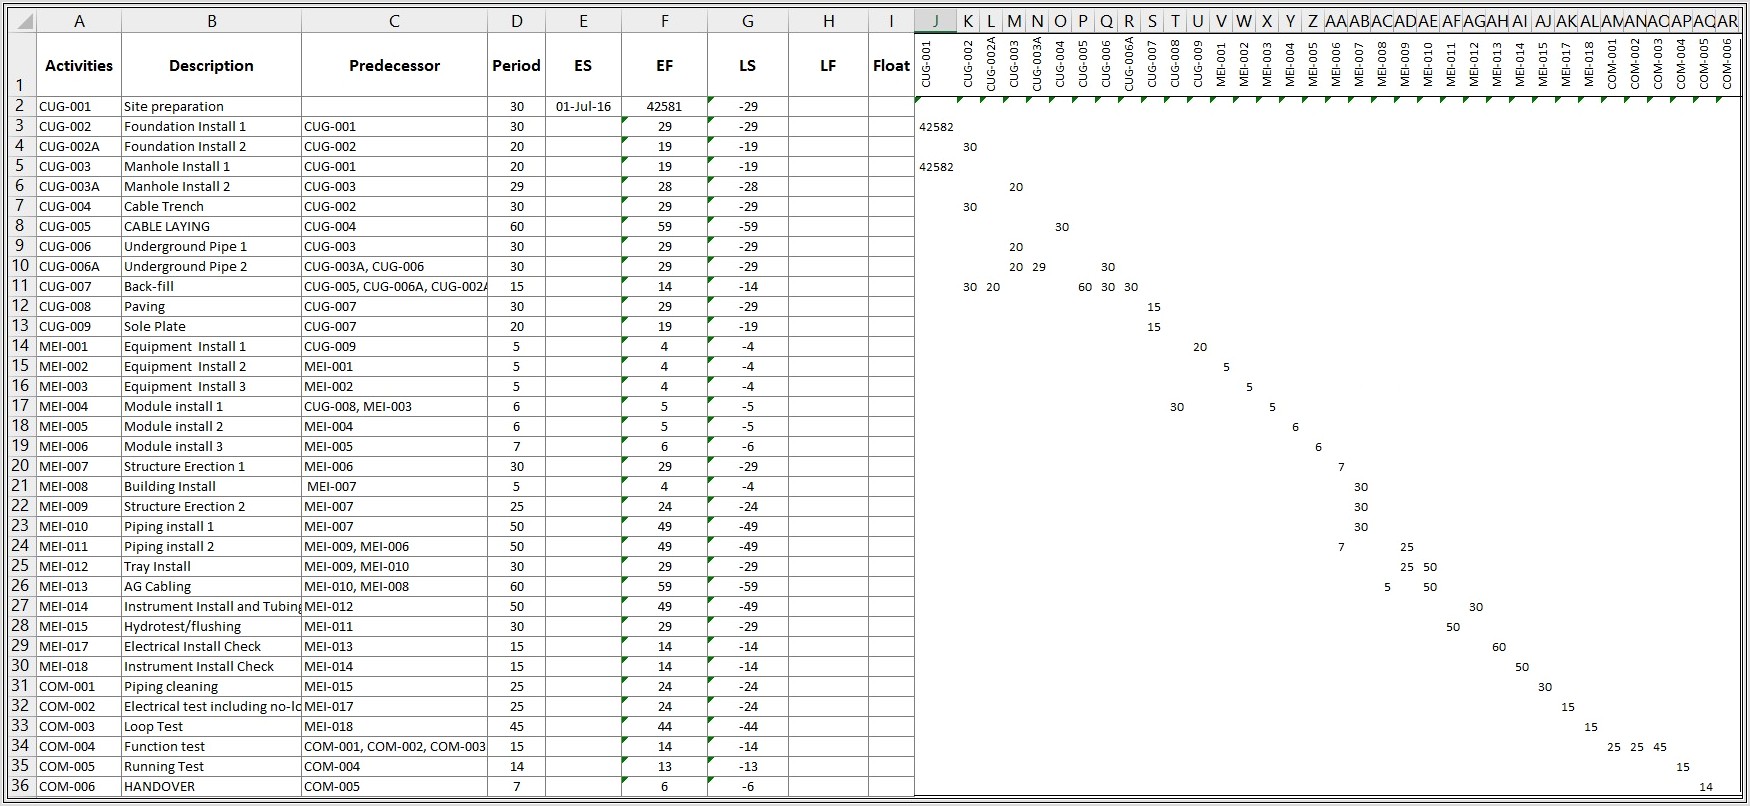 Excel Vba Sort Spreadsheet